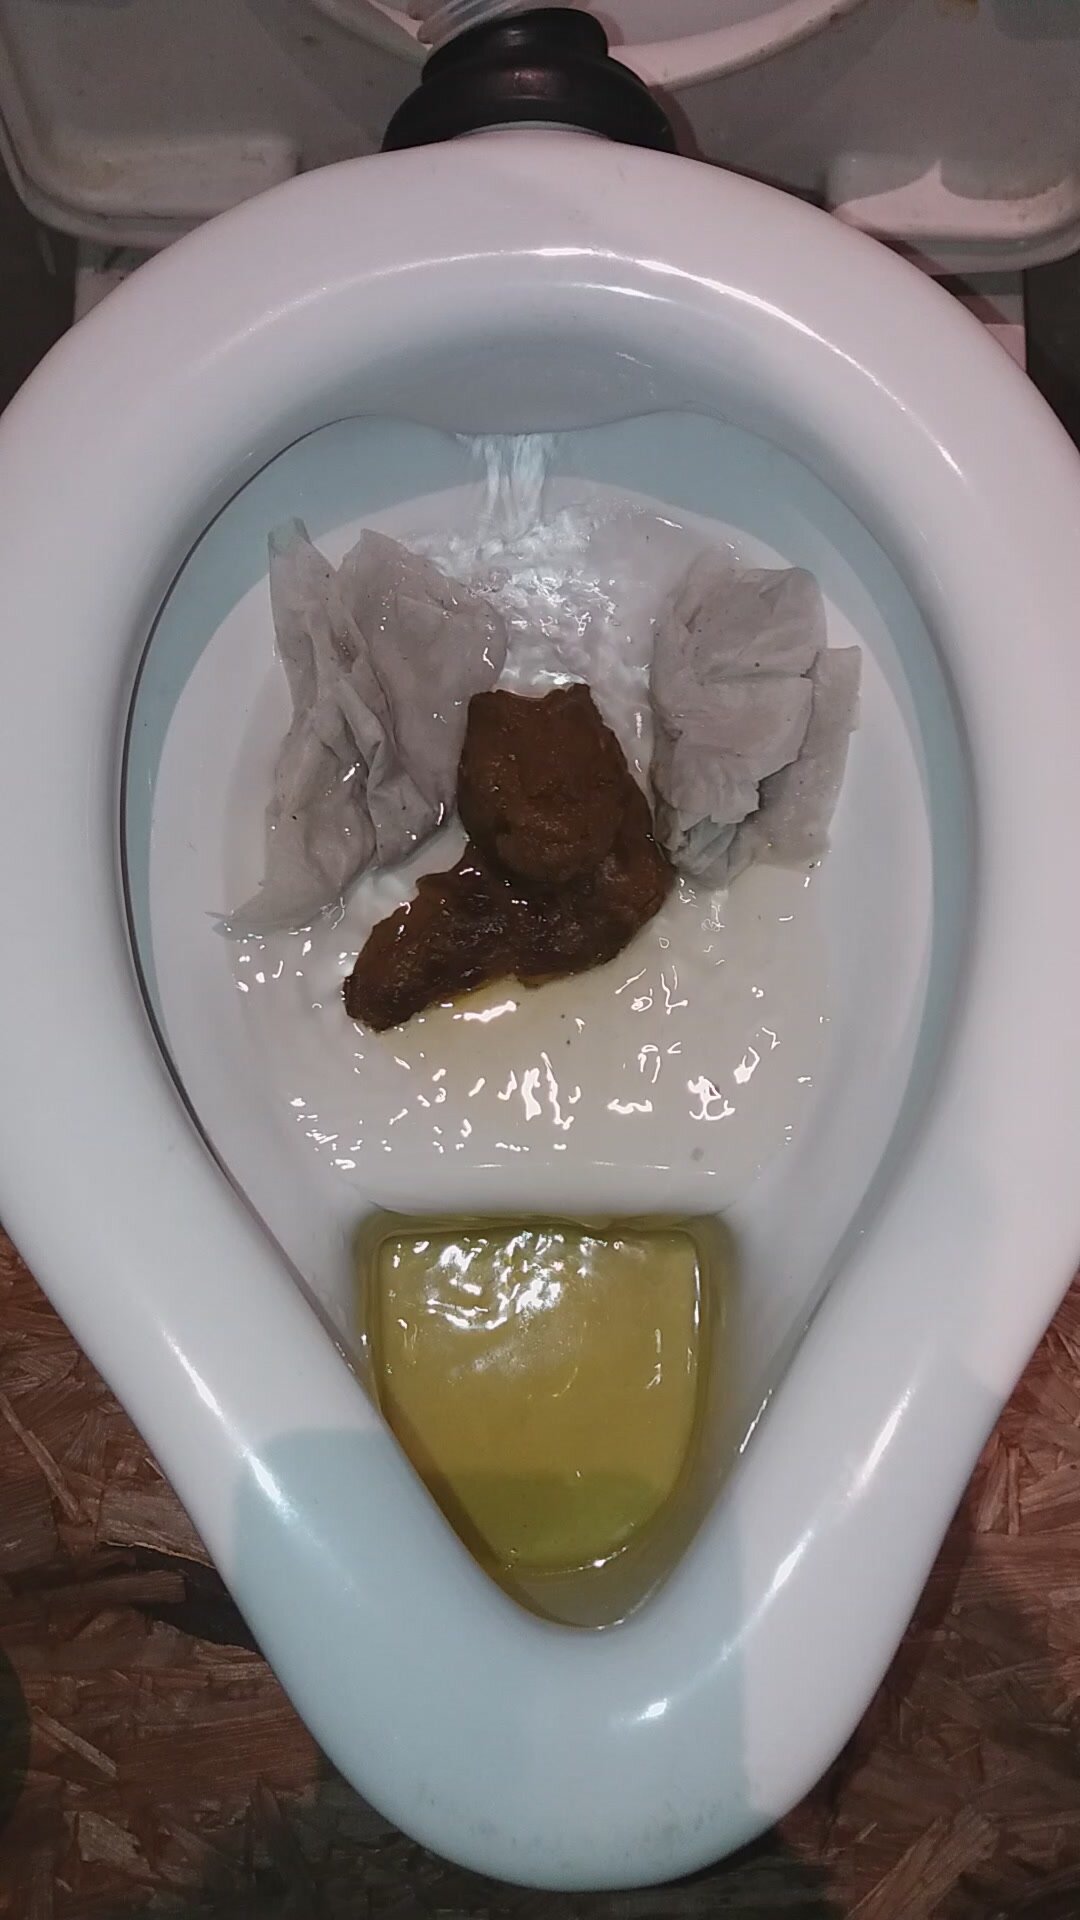 Flushed poop